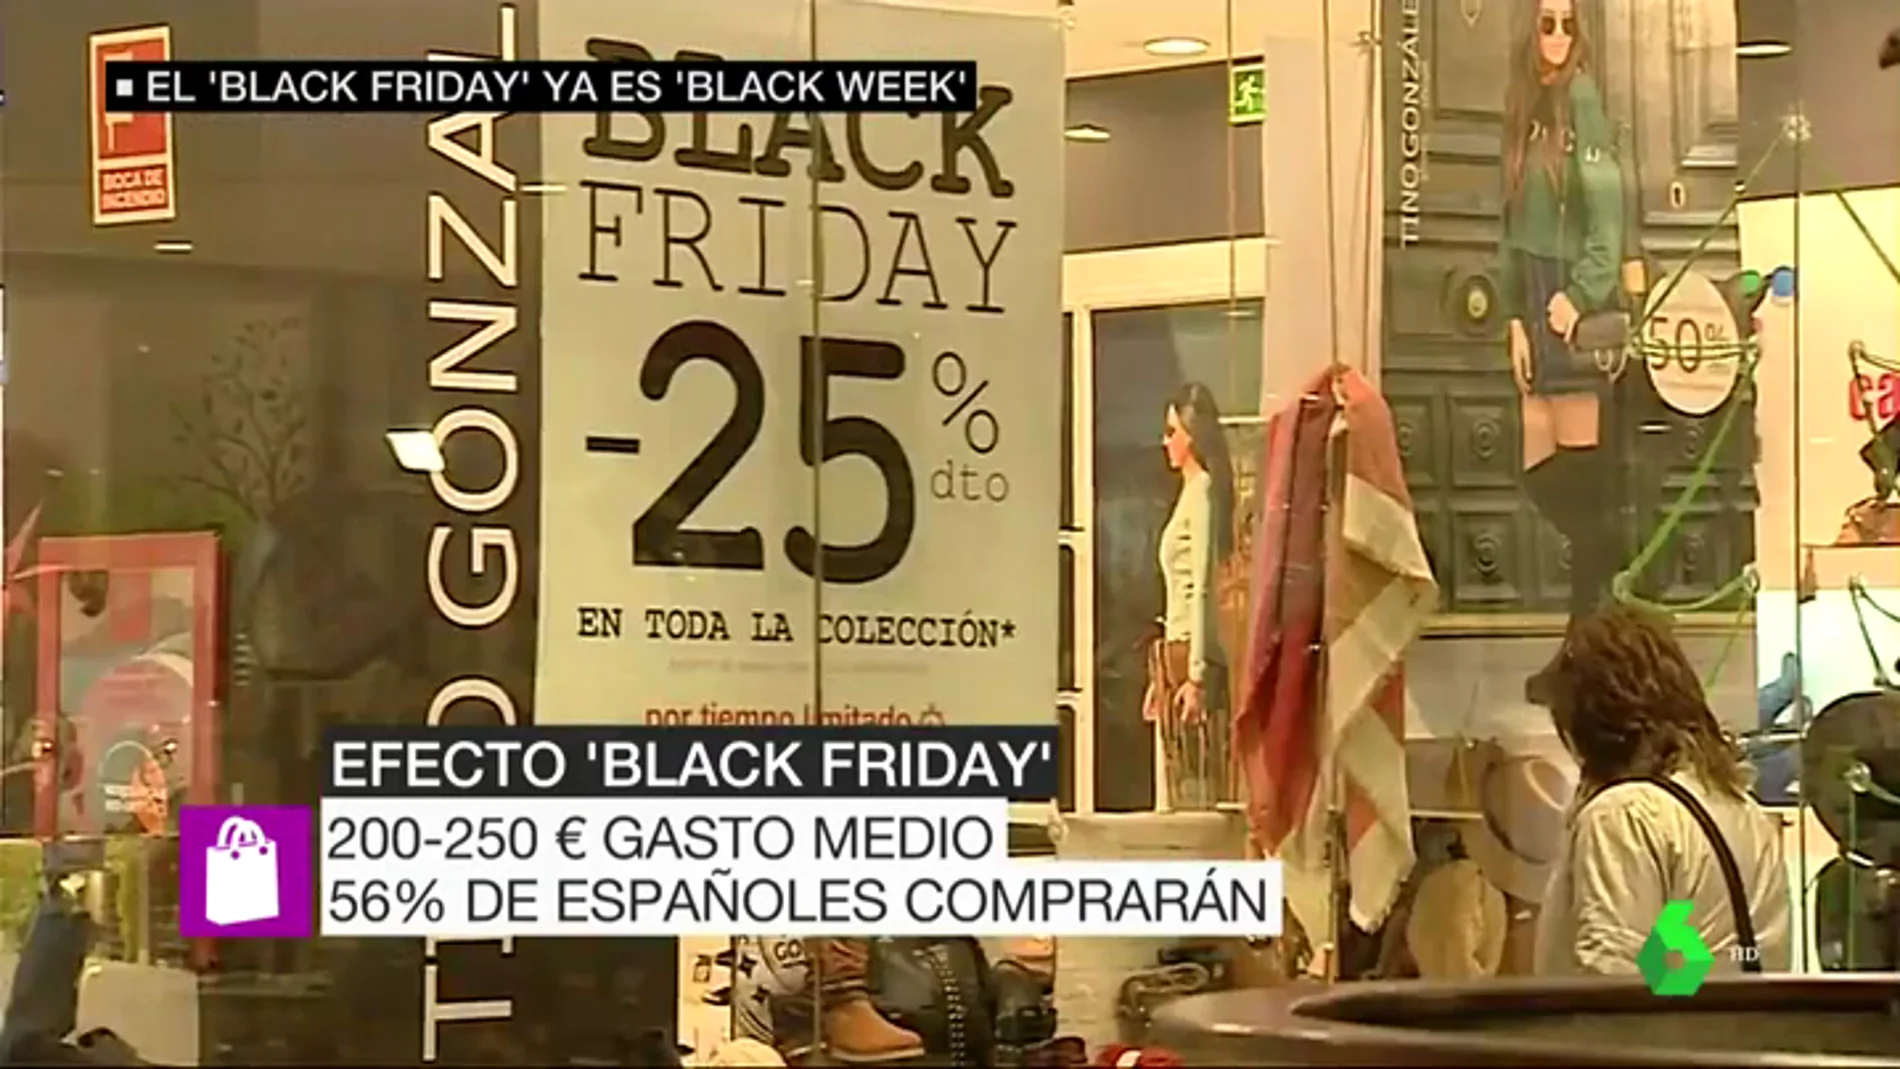 Black Friday 2018: La mitad de españoles comprará durante esta jornada y el gasto medio será de 250 euros